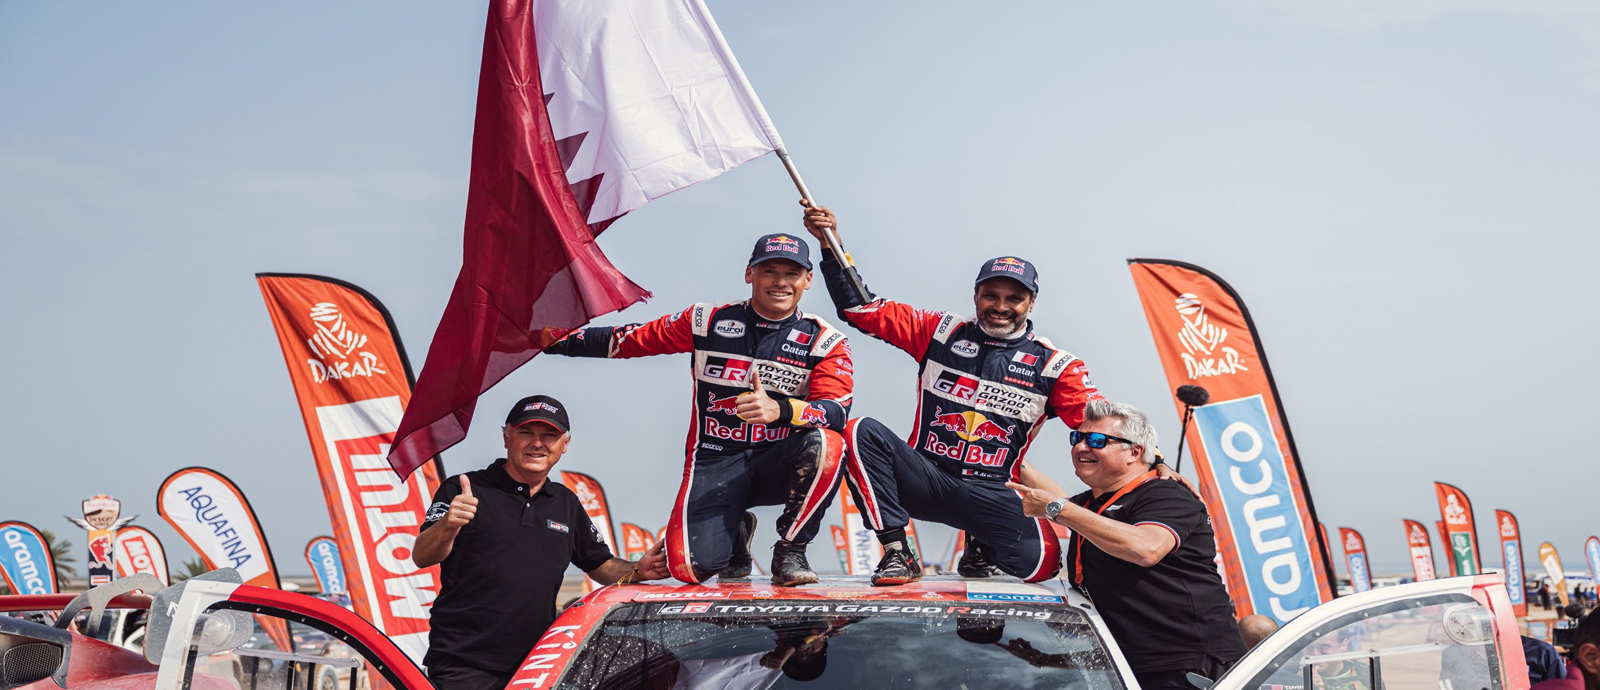 Rally champion Nasser Al-Attiyah